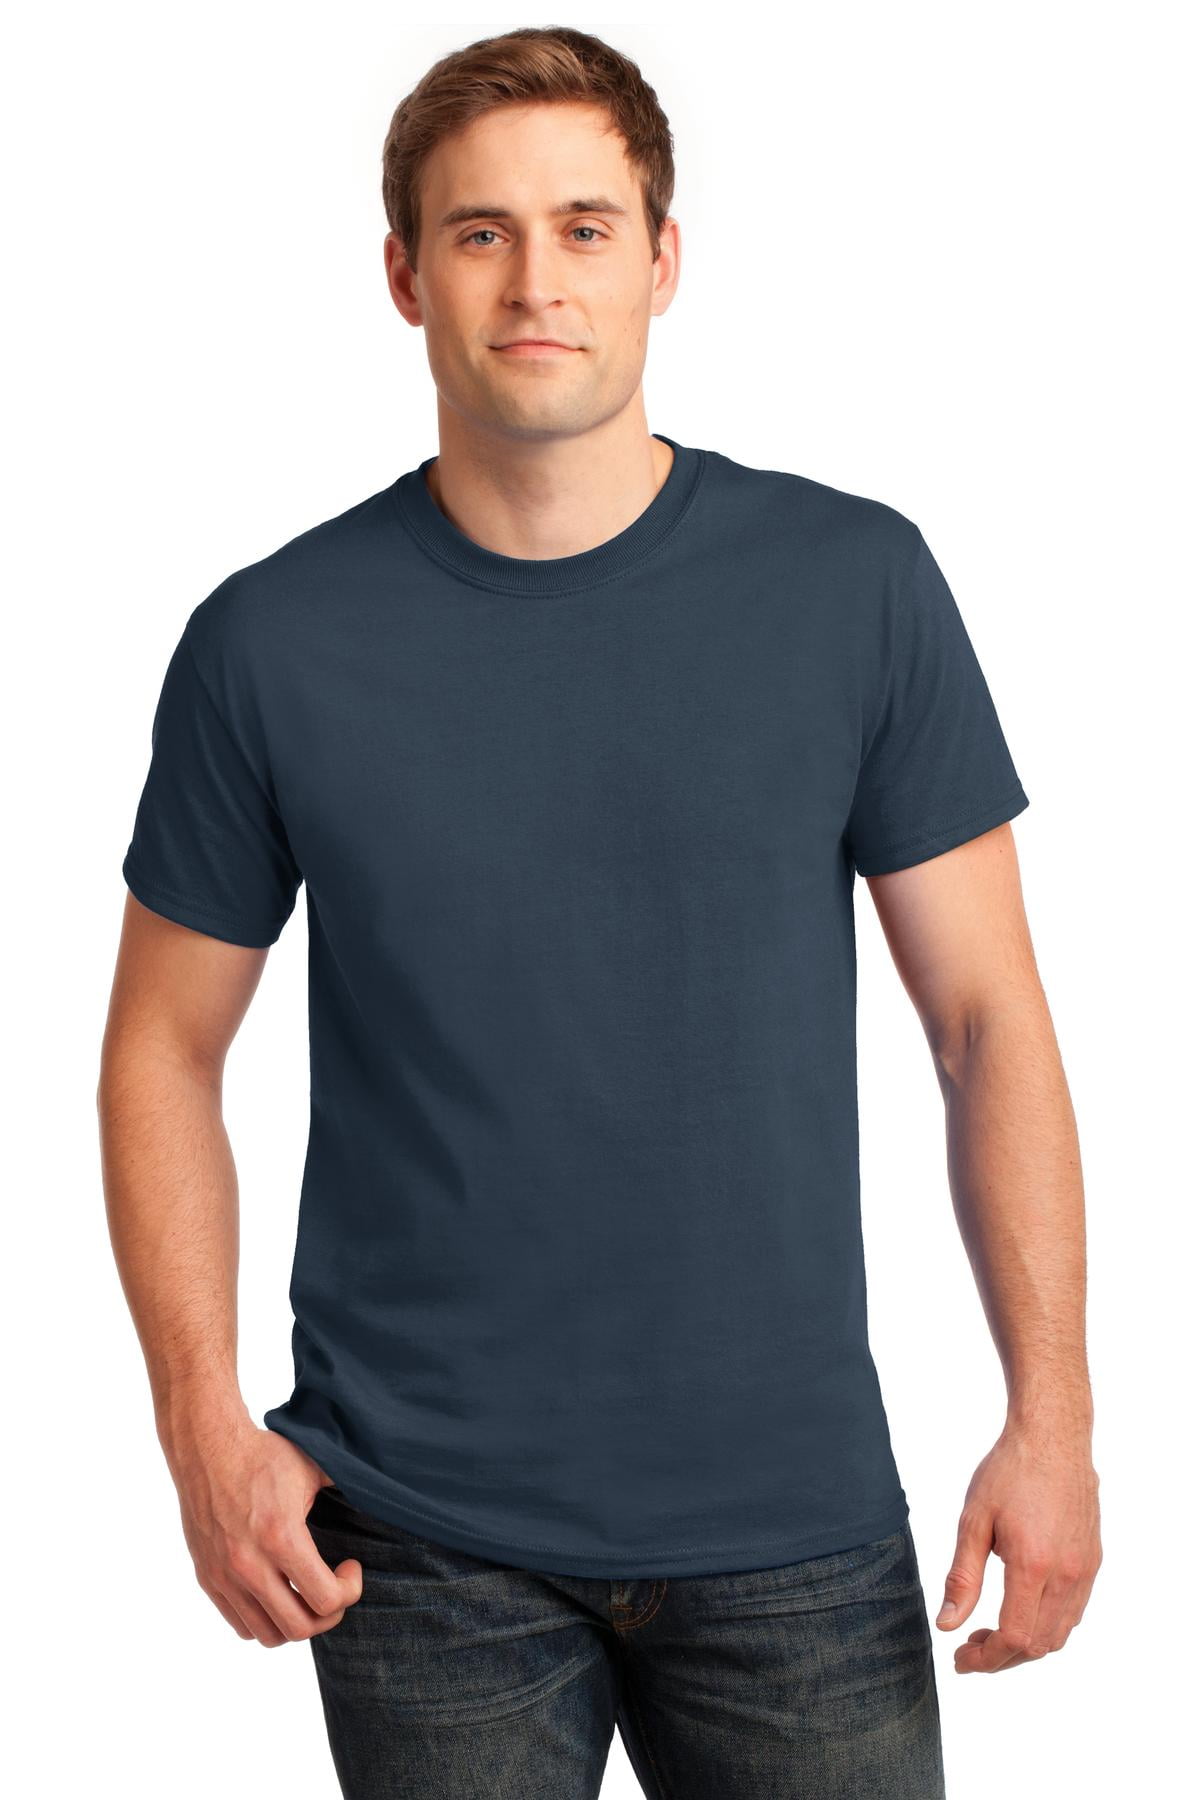 Gildan Men's 100 Percent Cotton Crew Neck T-Shirt. 2000 - Walmart.com